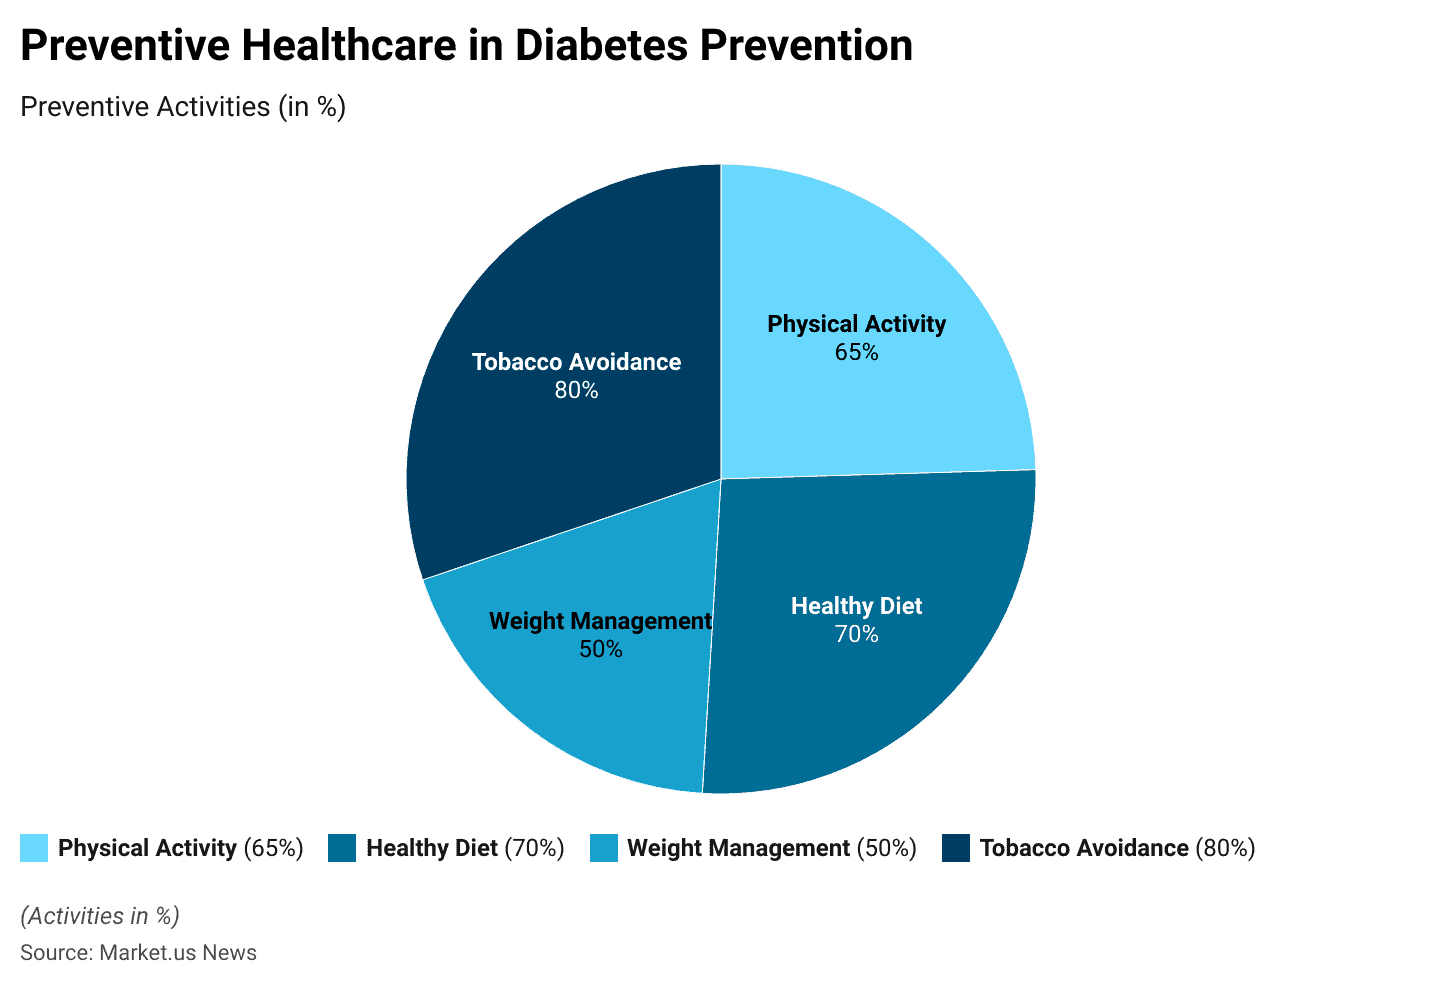 Preventive Healthcare Statistics